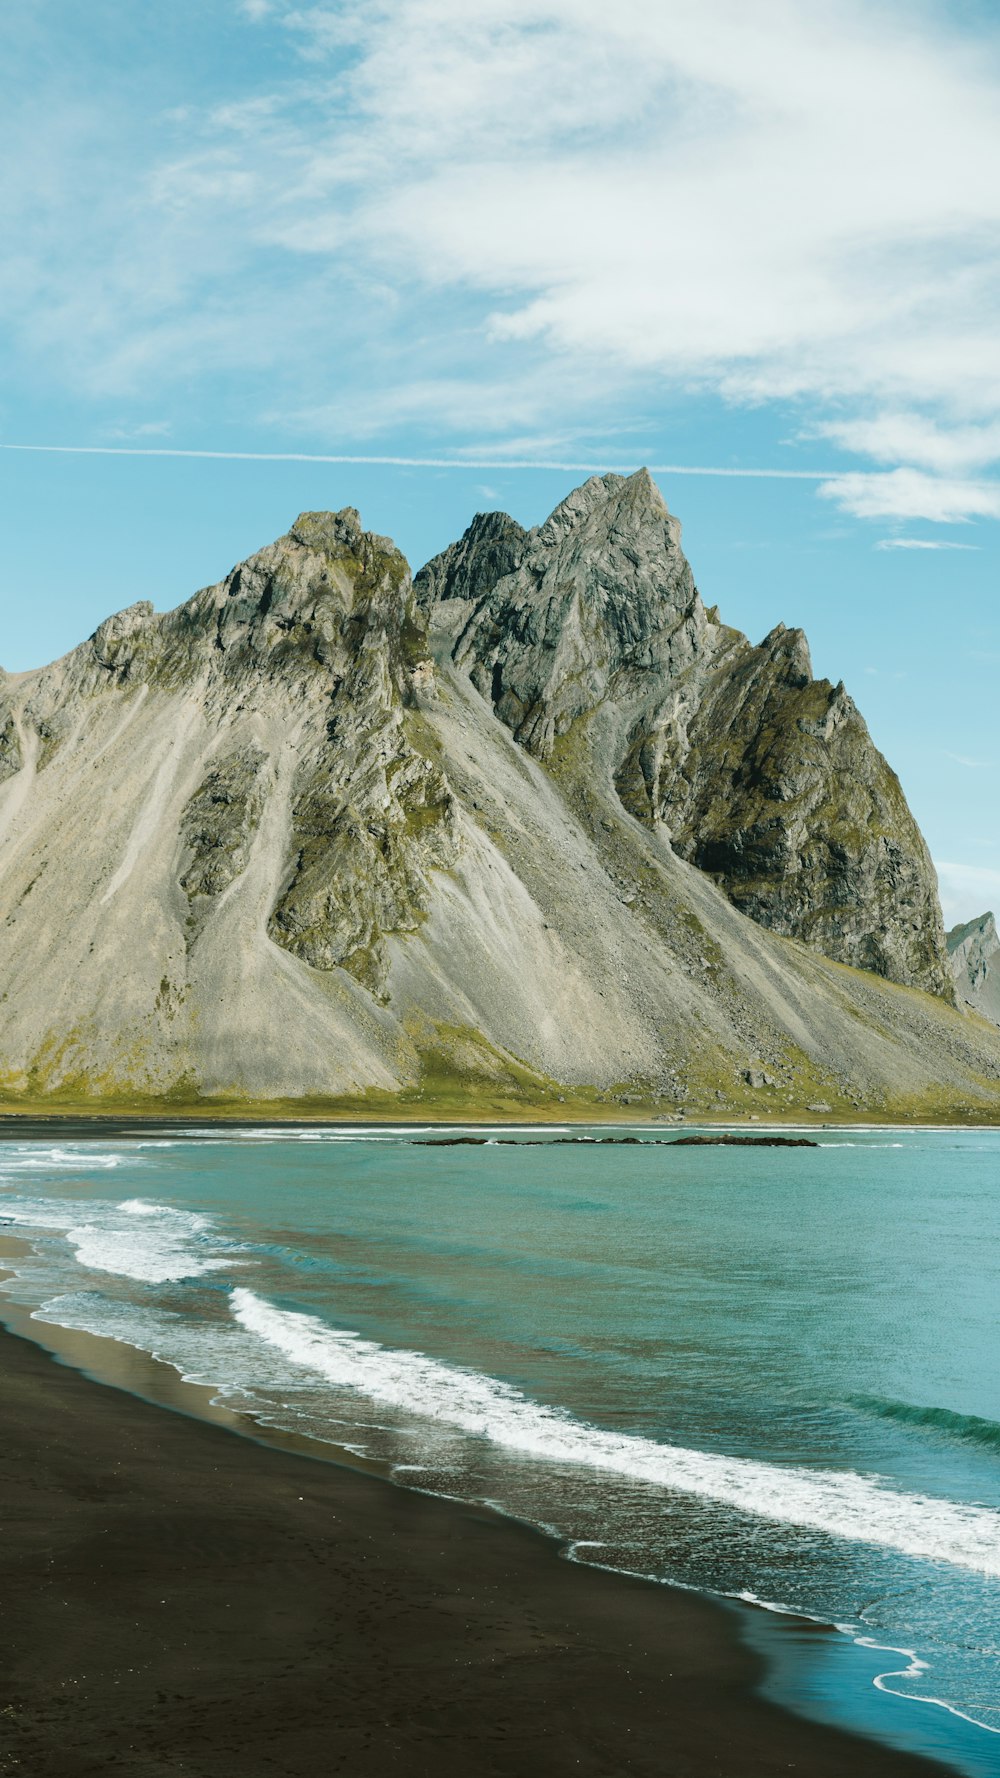 Montaña rocosa gris al lado del cuerpo de agua durante el día